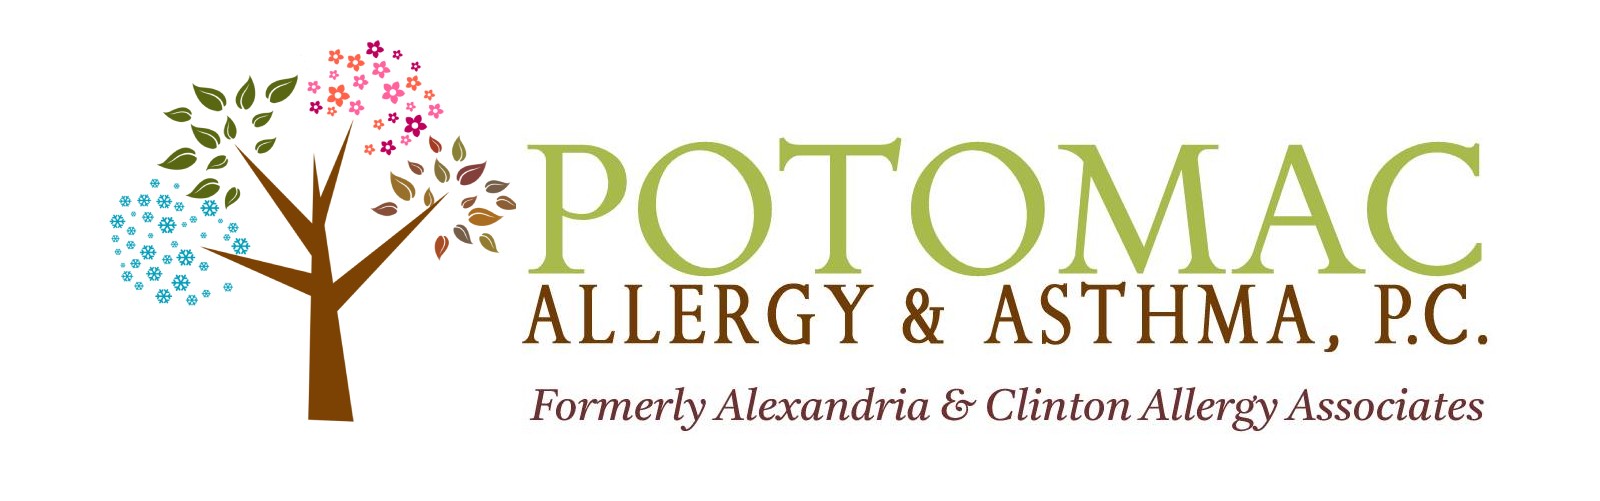 Potomac Allergy & Asthma, P.C.